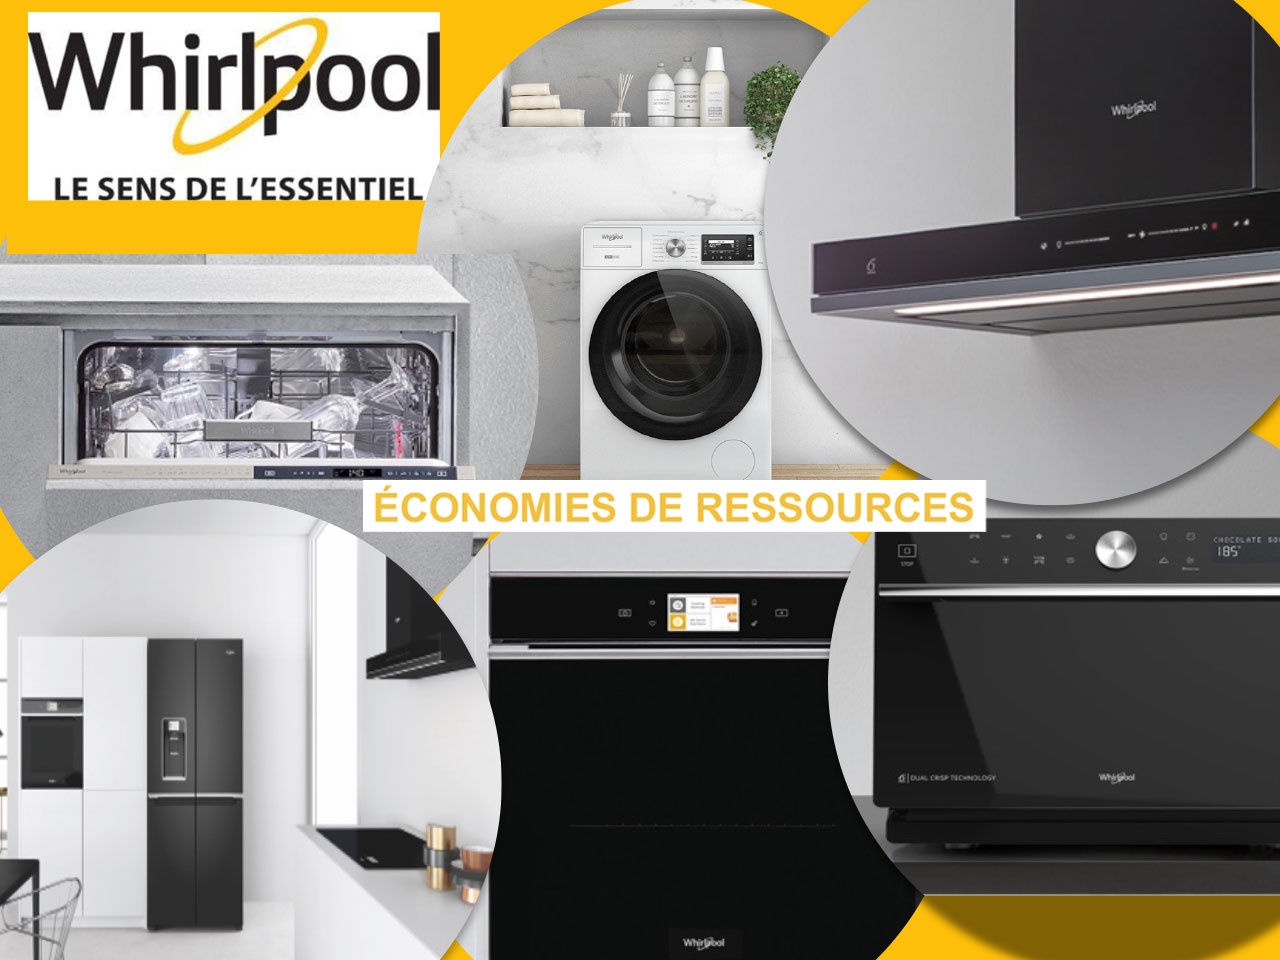 Whirlpool : Comment ses appareils se sont transformés et contribuent à l’effort environnemental